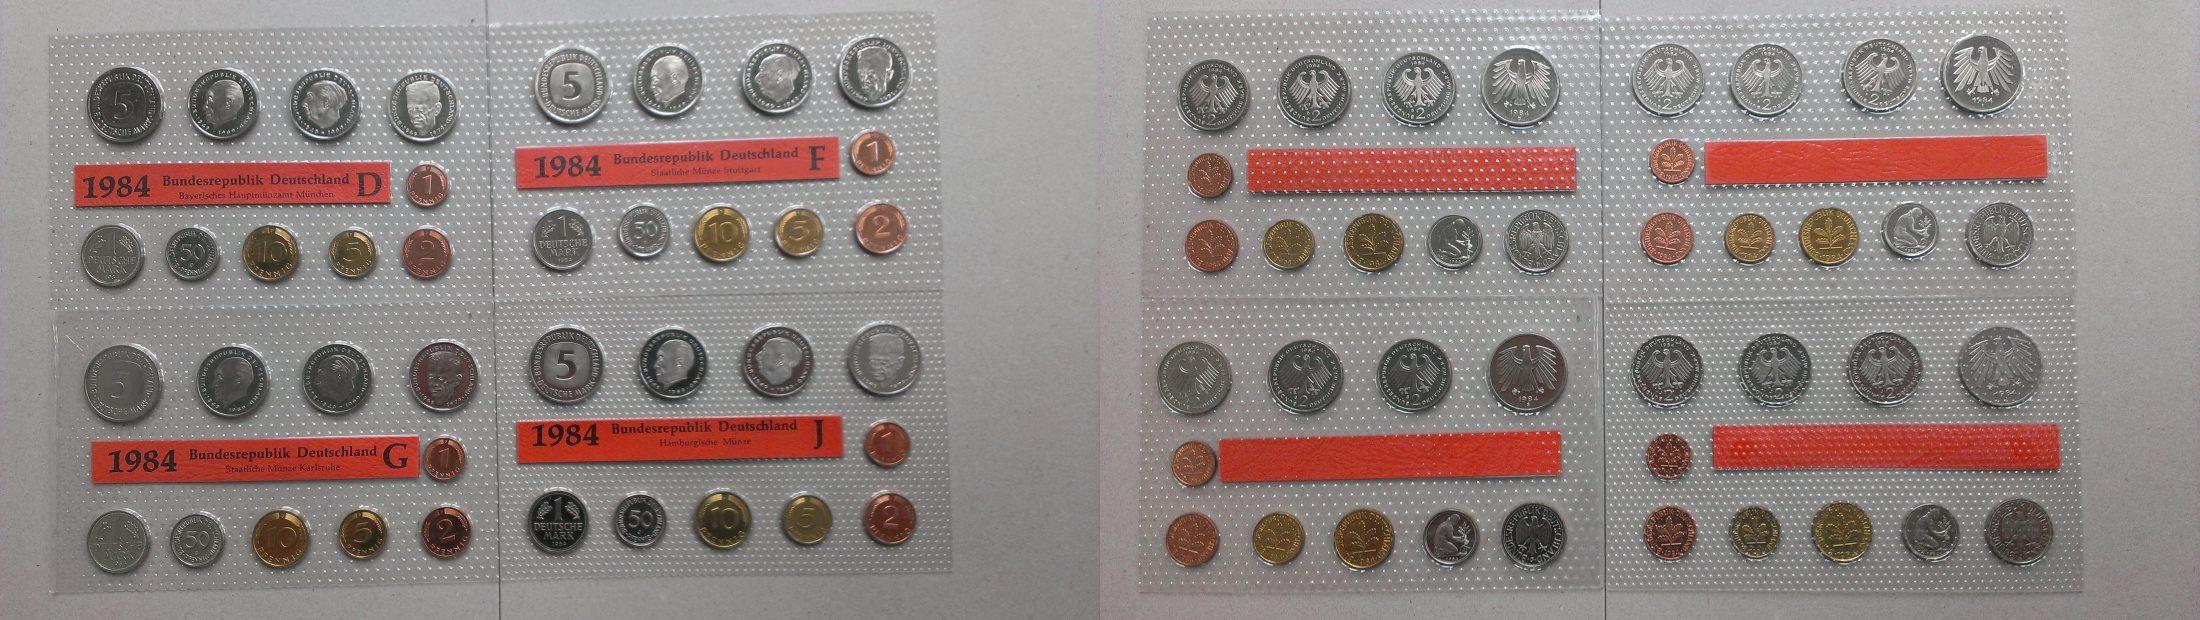 Foto Bundesrepublik Deutschland Jahreskursmünzensatz Dm 1984